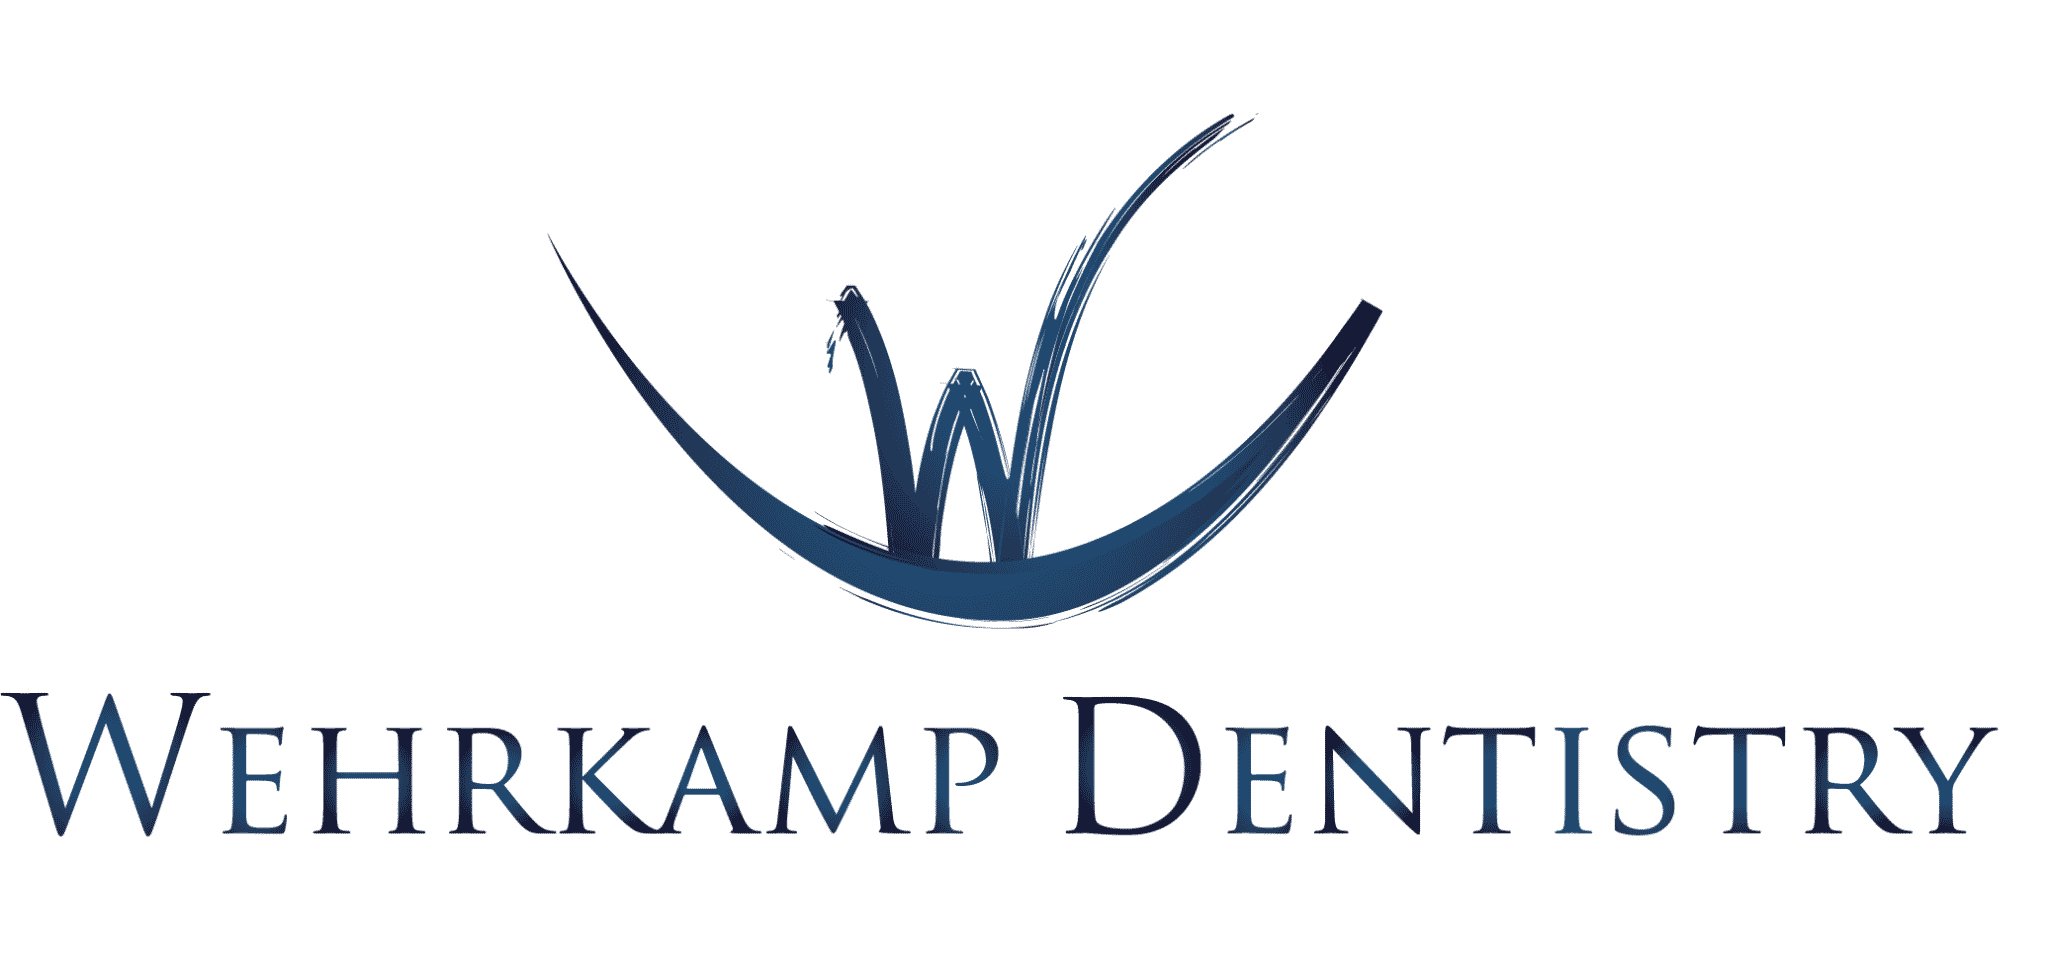 Wehrkamp Dentistry - Brandon, SD